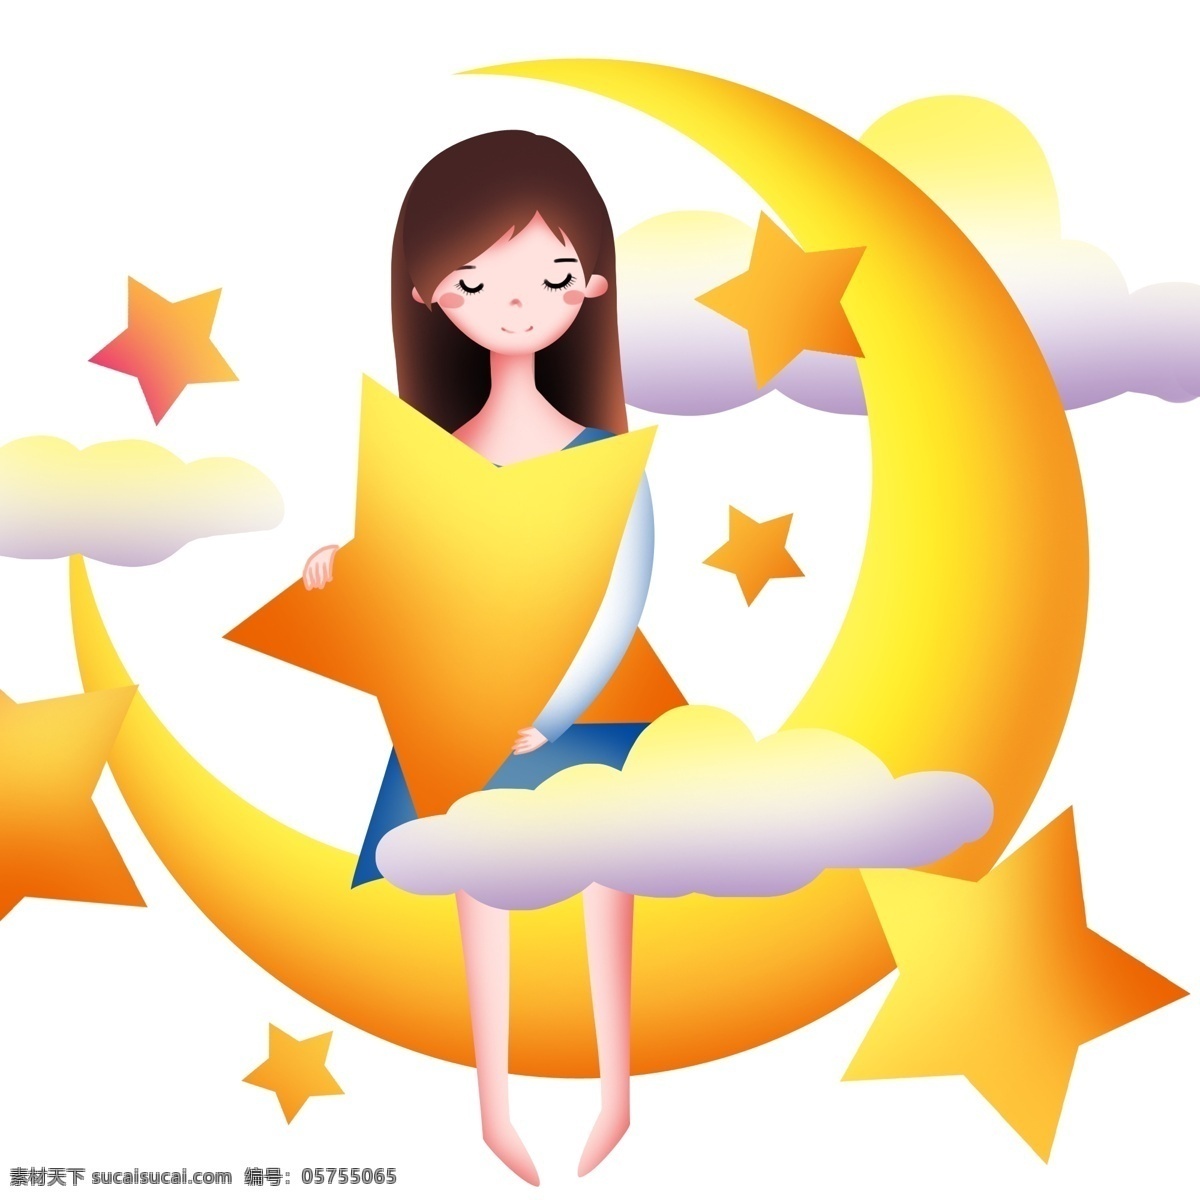 月亮 上 睡觉 女孩 世界 睡眠 日 插画 黄色的月亮 黄色的星星 白色的云朵 卡通人物 打呼噜